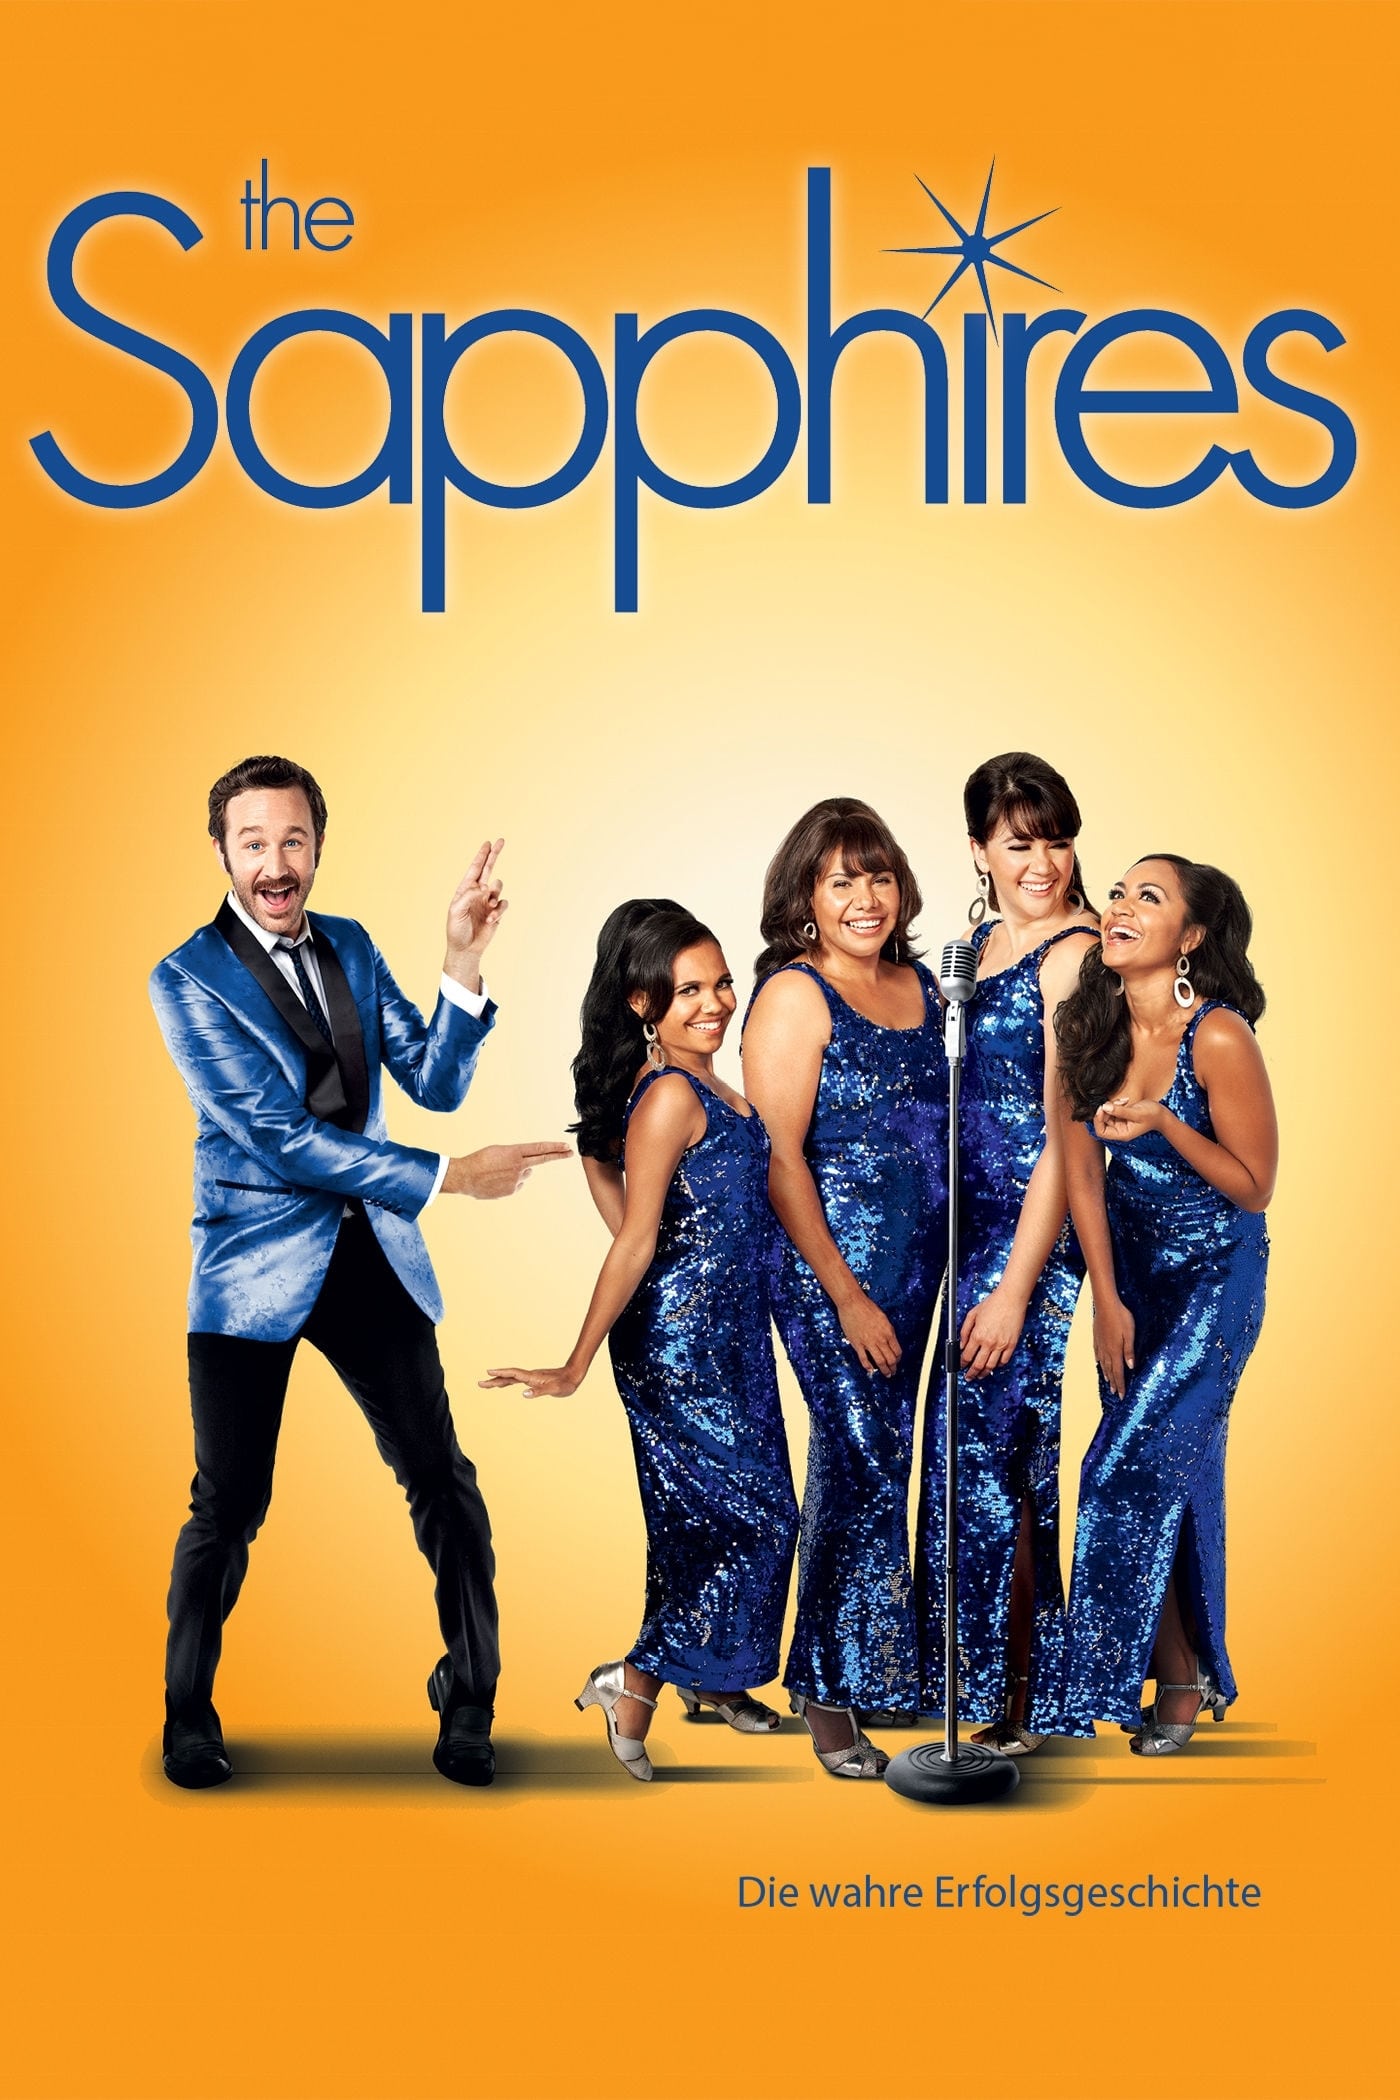 Plakat von "The Sapphires"